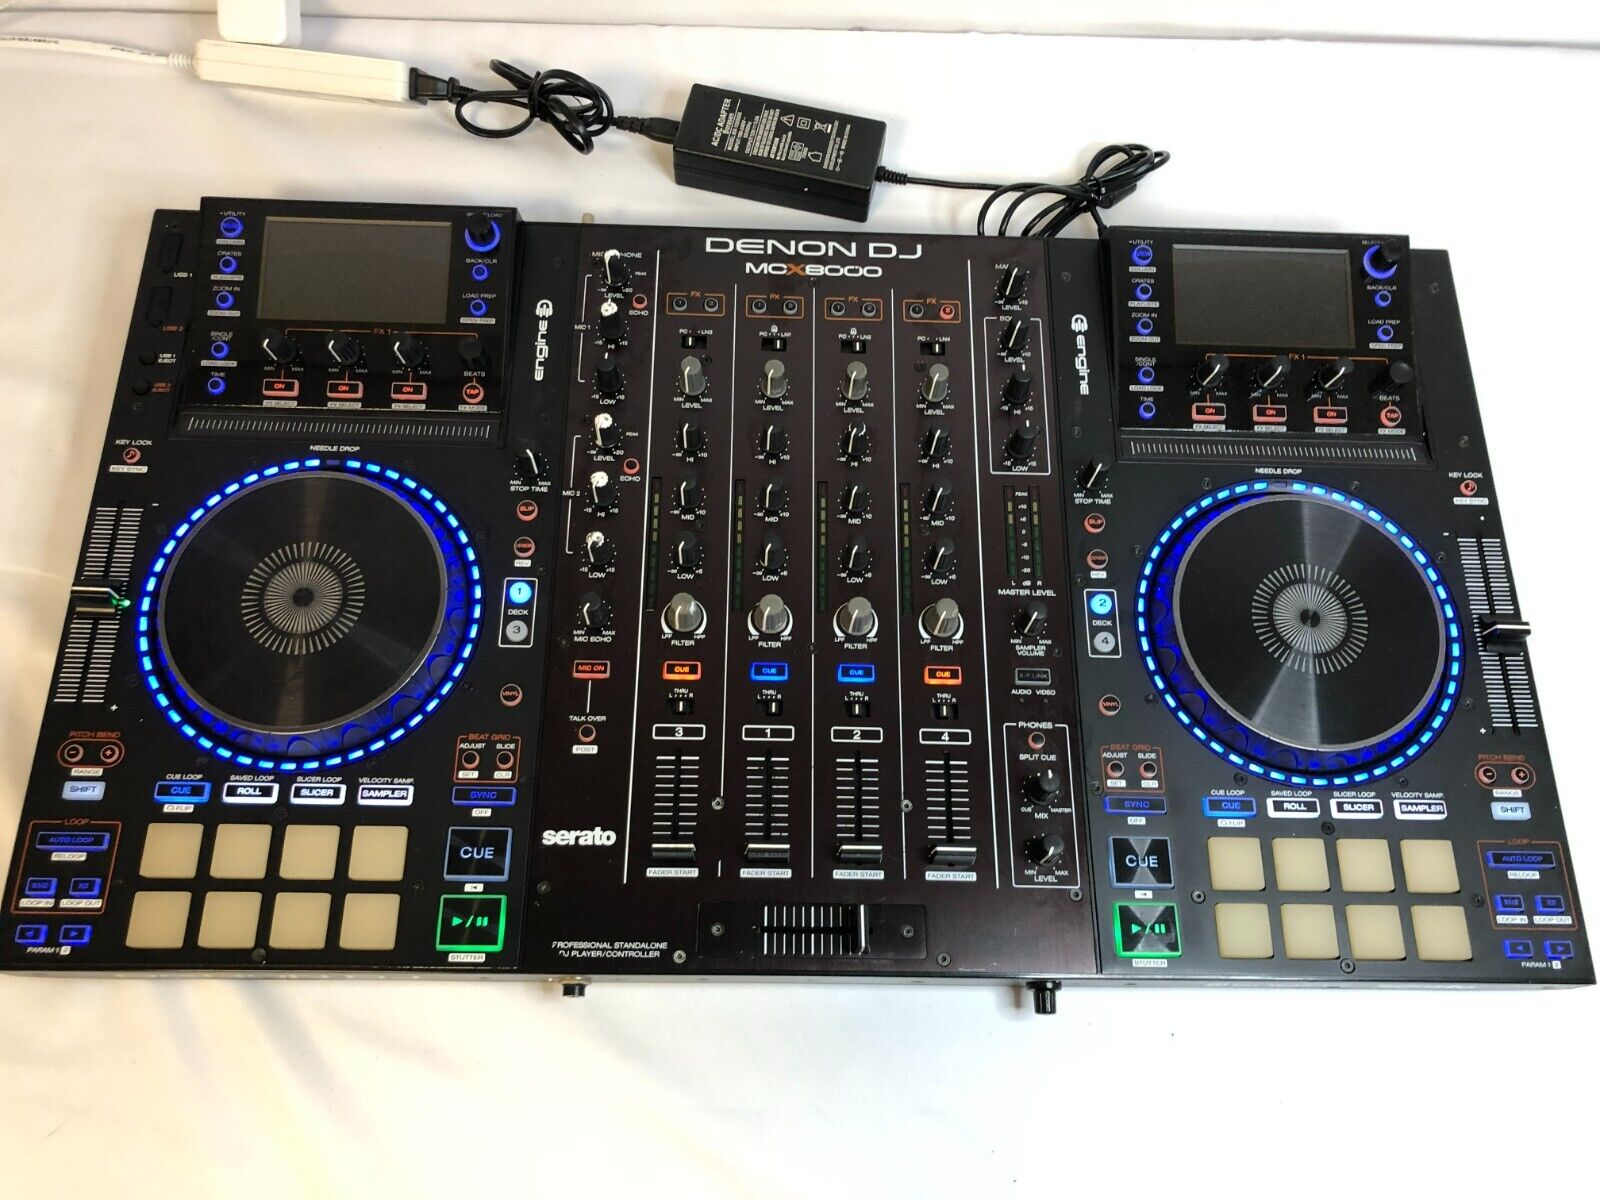 Denon DJ MCX8000 Professional 4-Channel DJ Controller for Serato Standalone Used - Picture 2 of 6